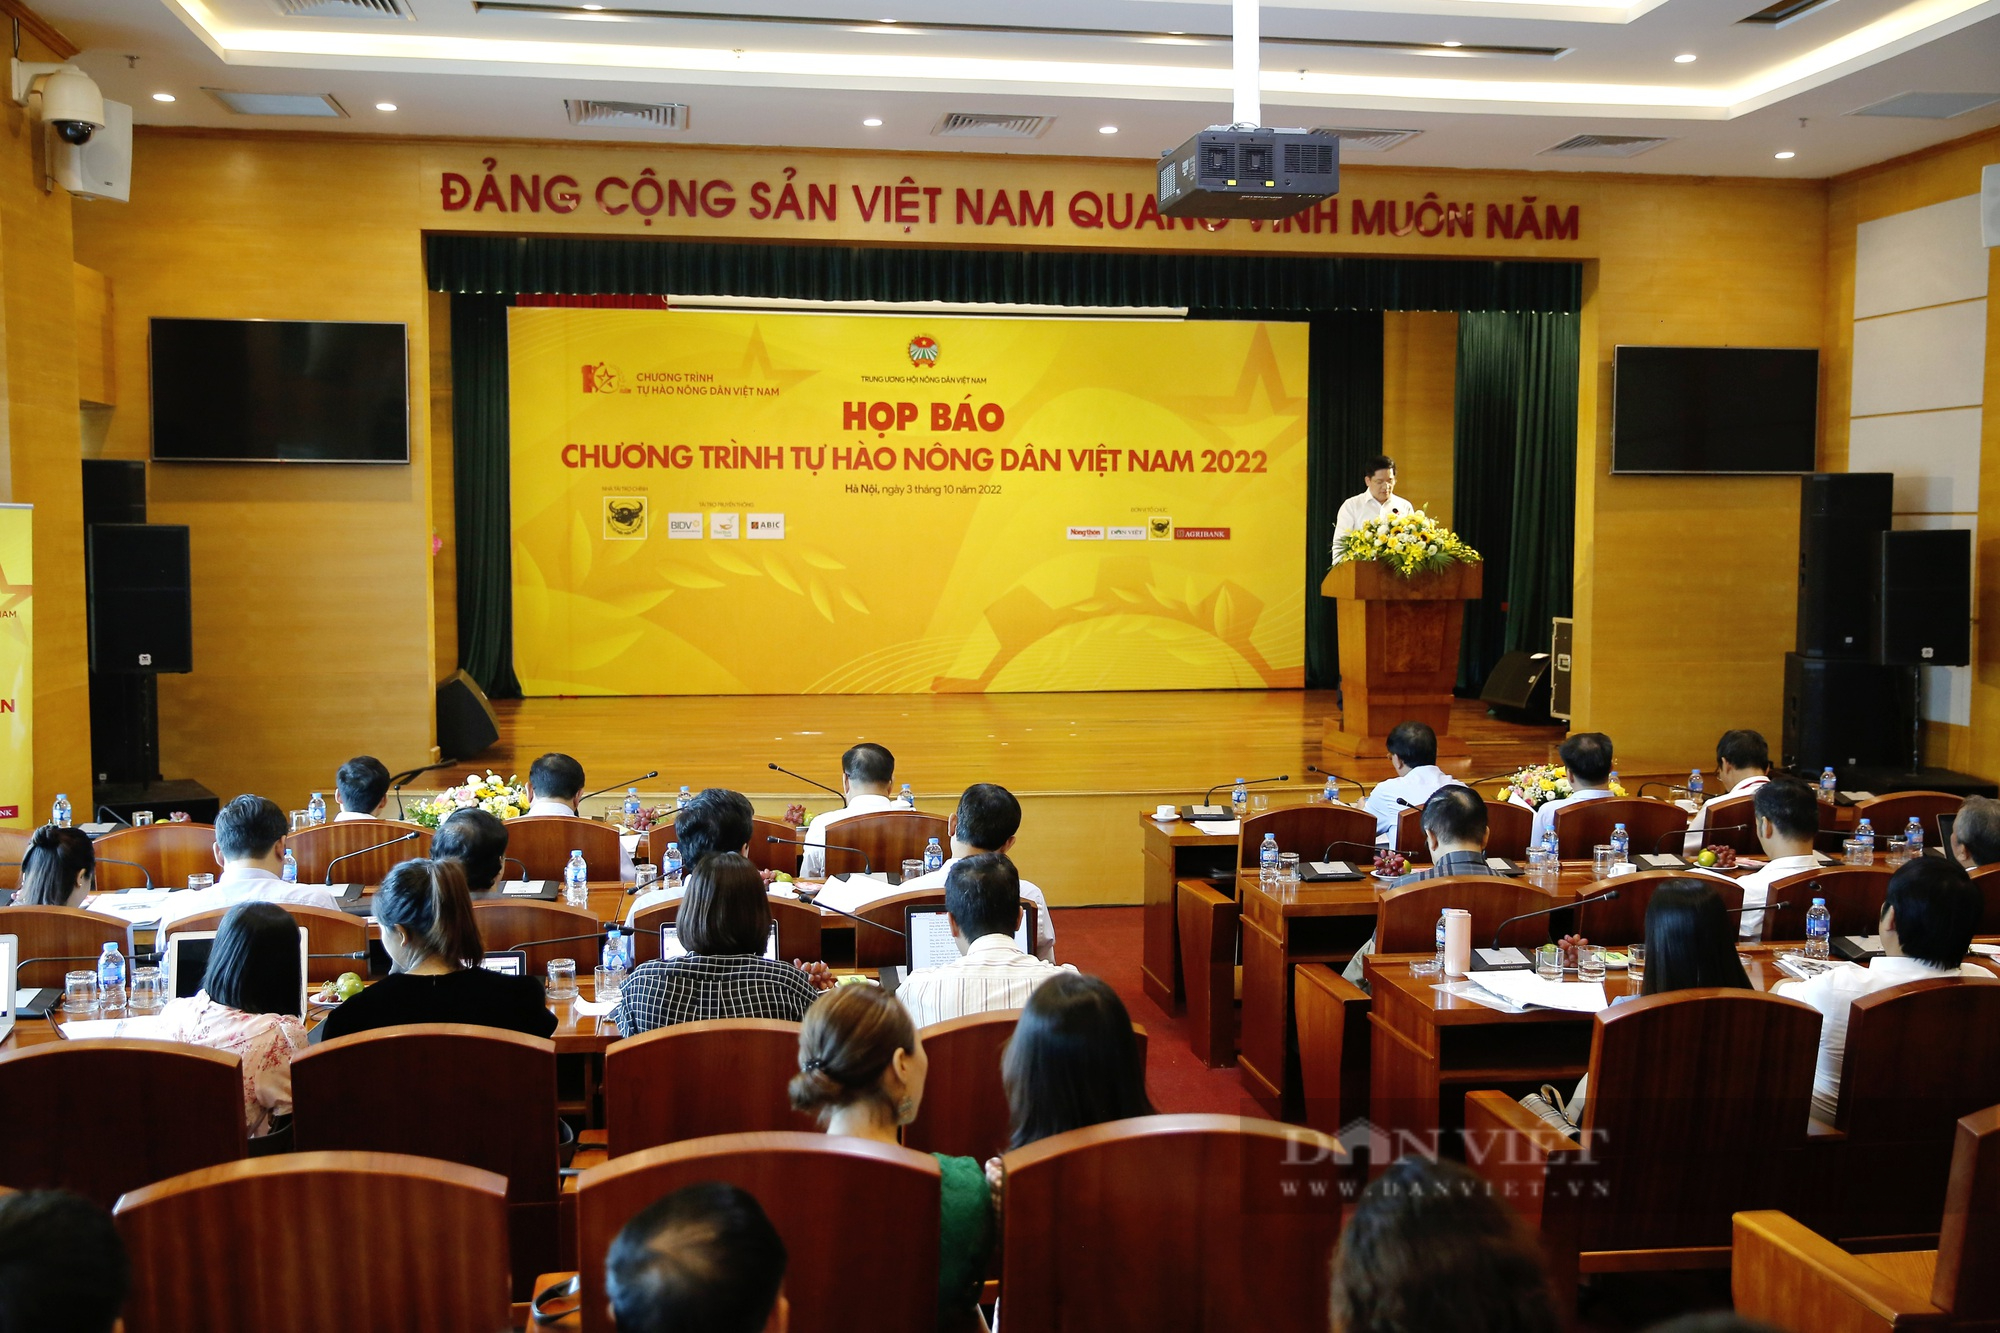 Hình ảnh Họp báo Chương trình Tự hào nông dân Việt Nam 2022 - Ảnh 1.